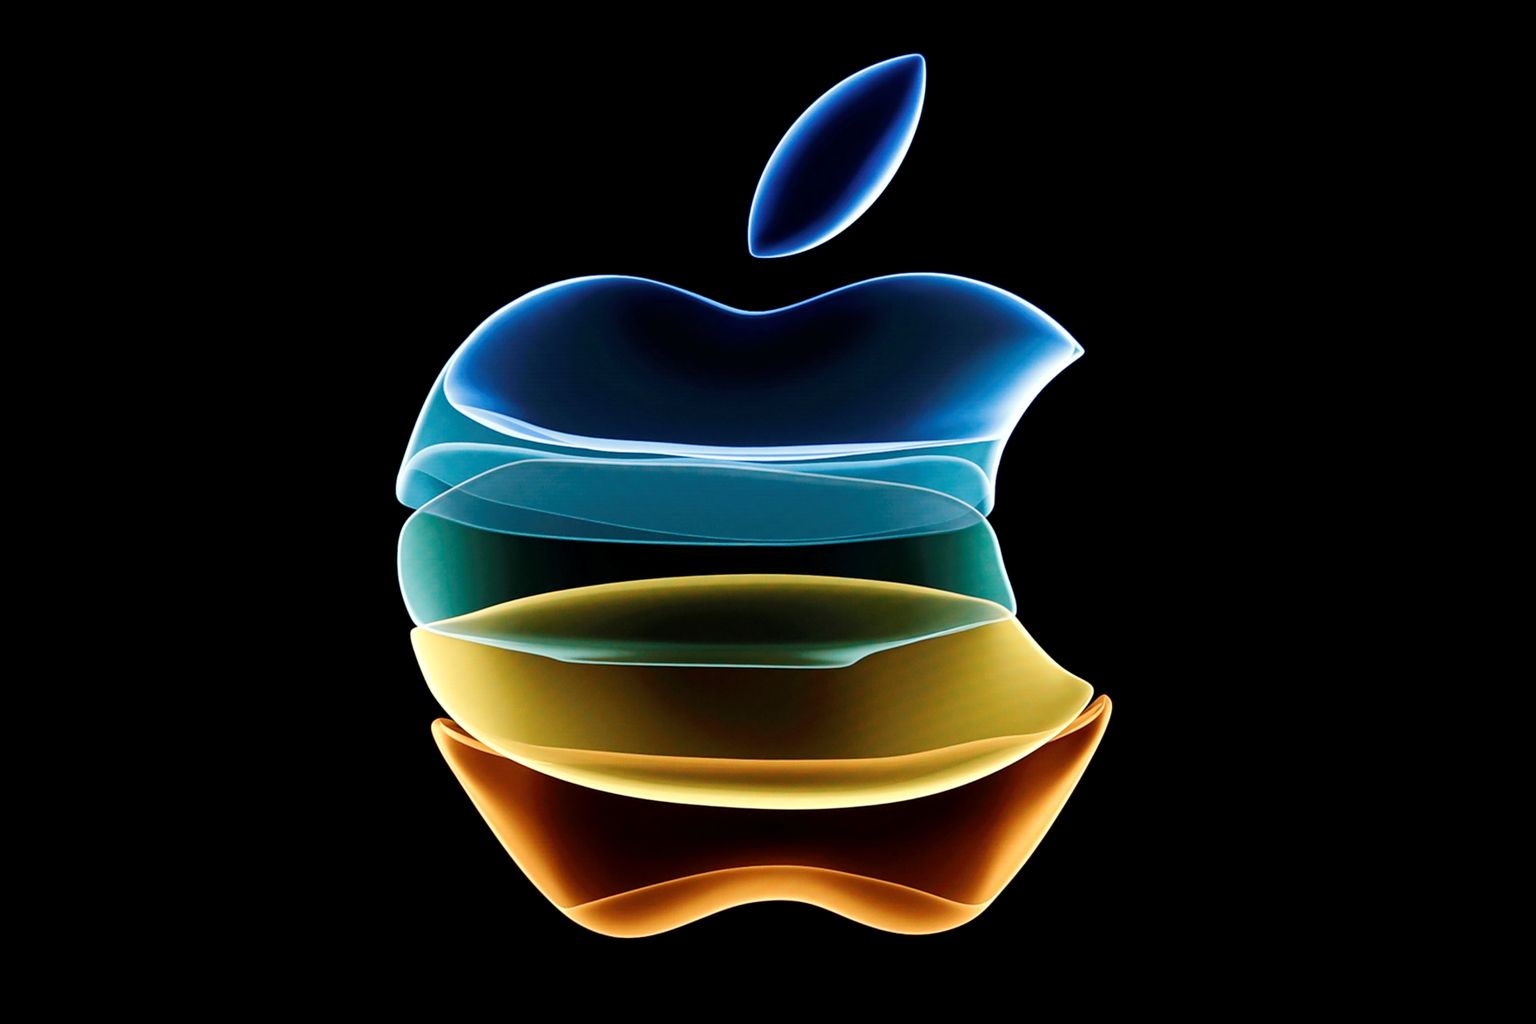 Apple'i logo ettevõtte peakorteris toimunud üritusel.